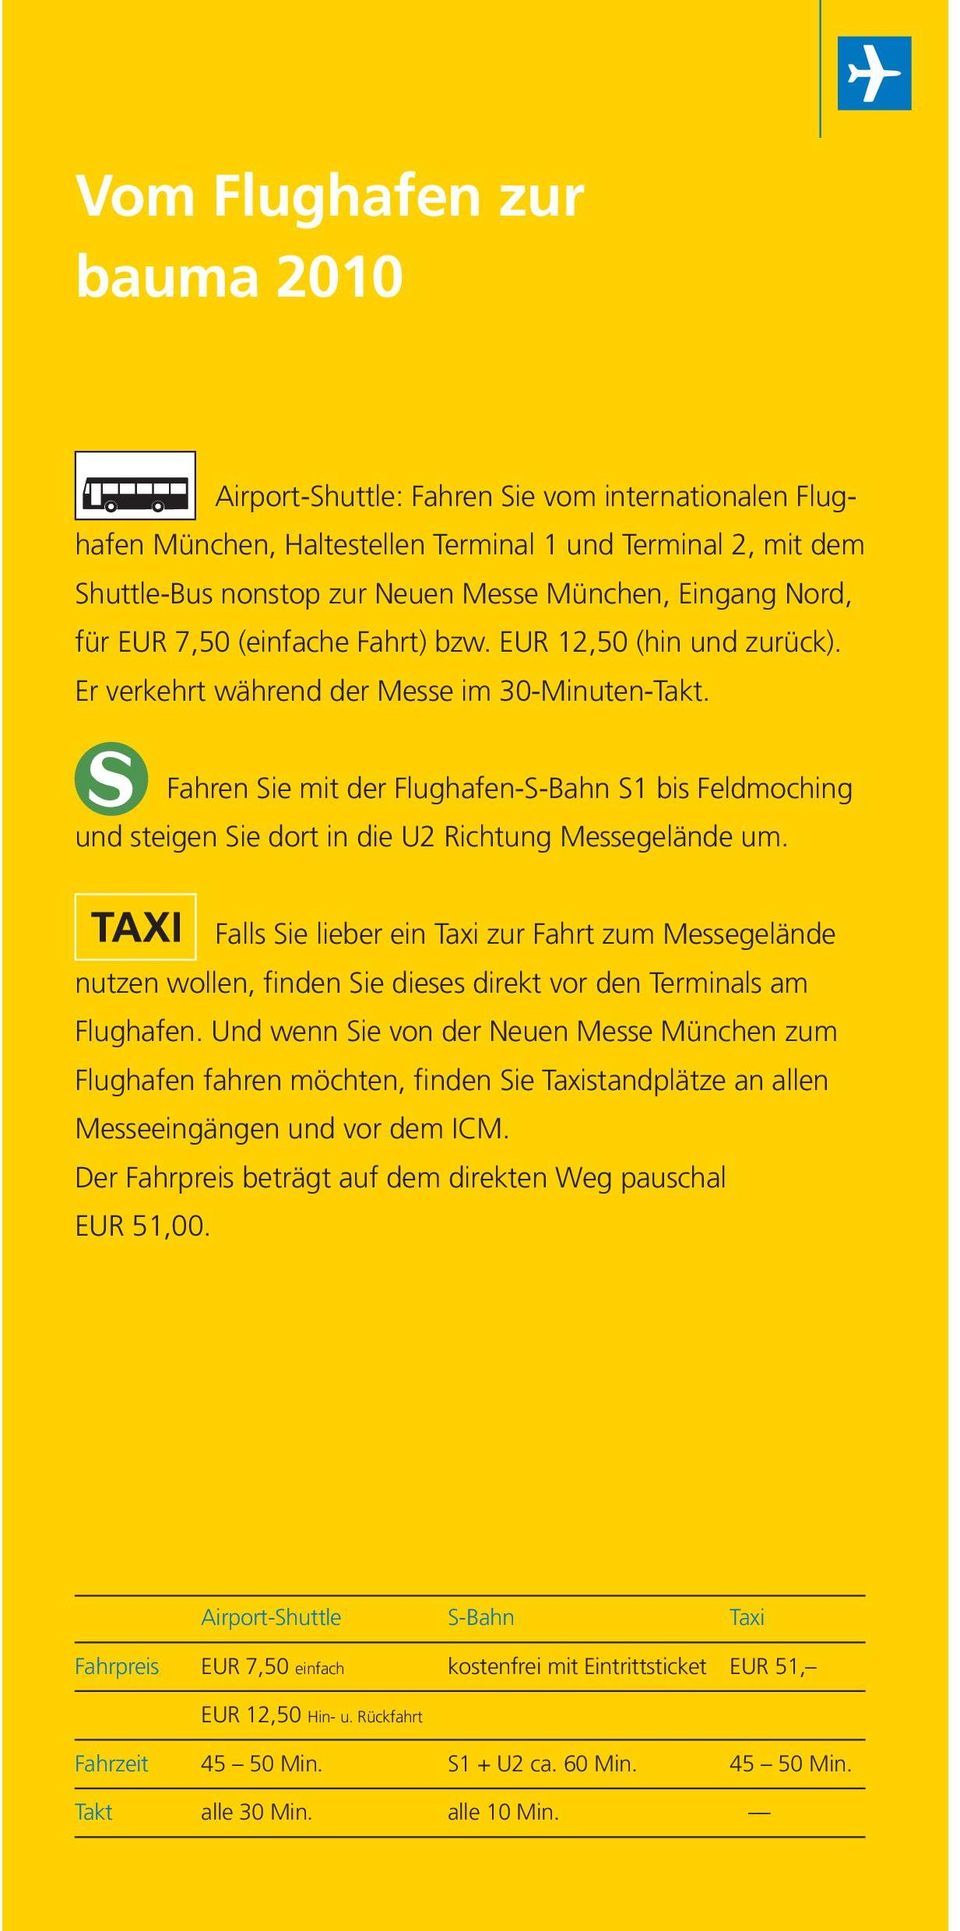 Fahren Sie mit der Flughafen-S-Bahn S1 bis Feldmoching und steigen Sie dort in die U2 Richtung essegelände um.